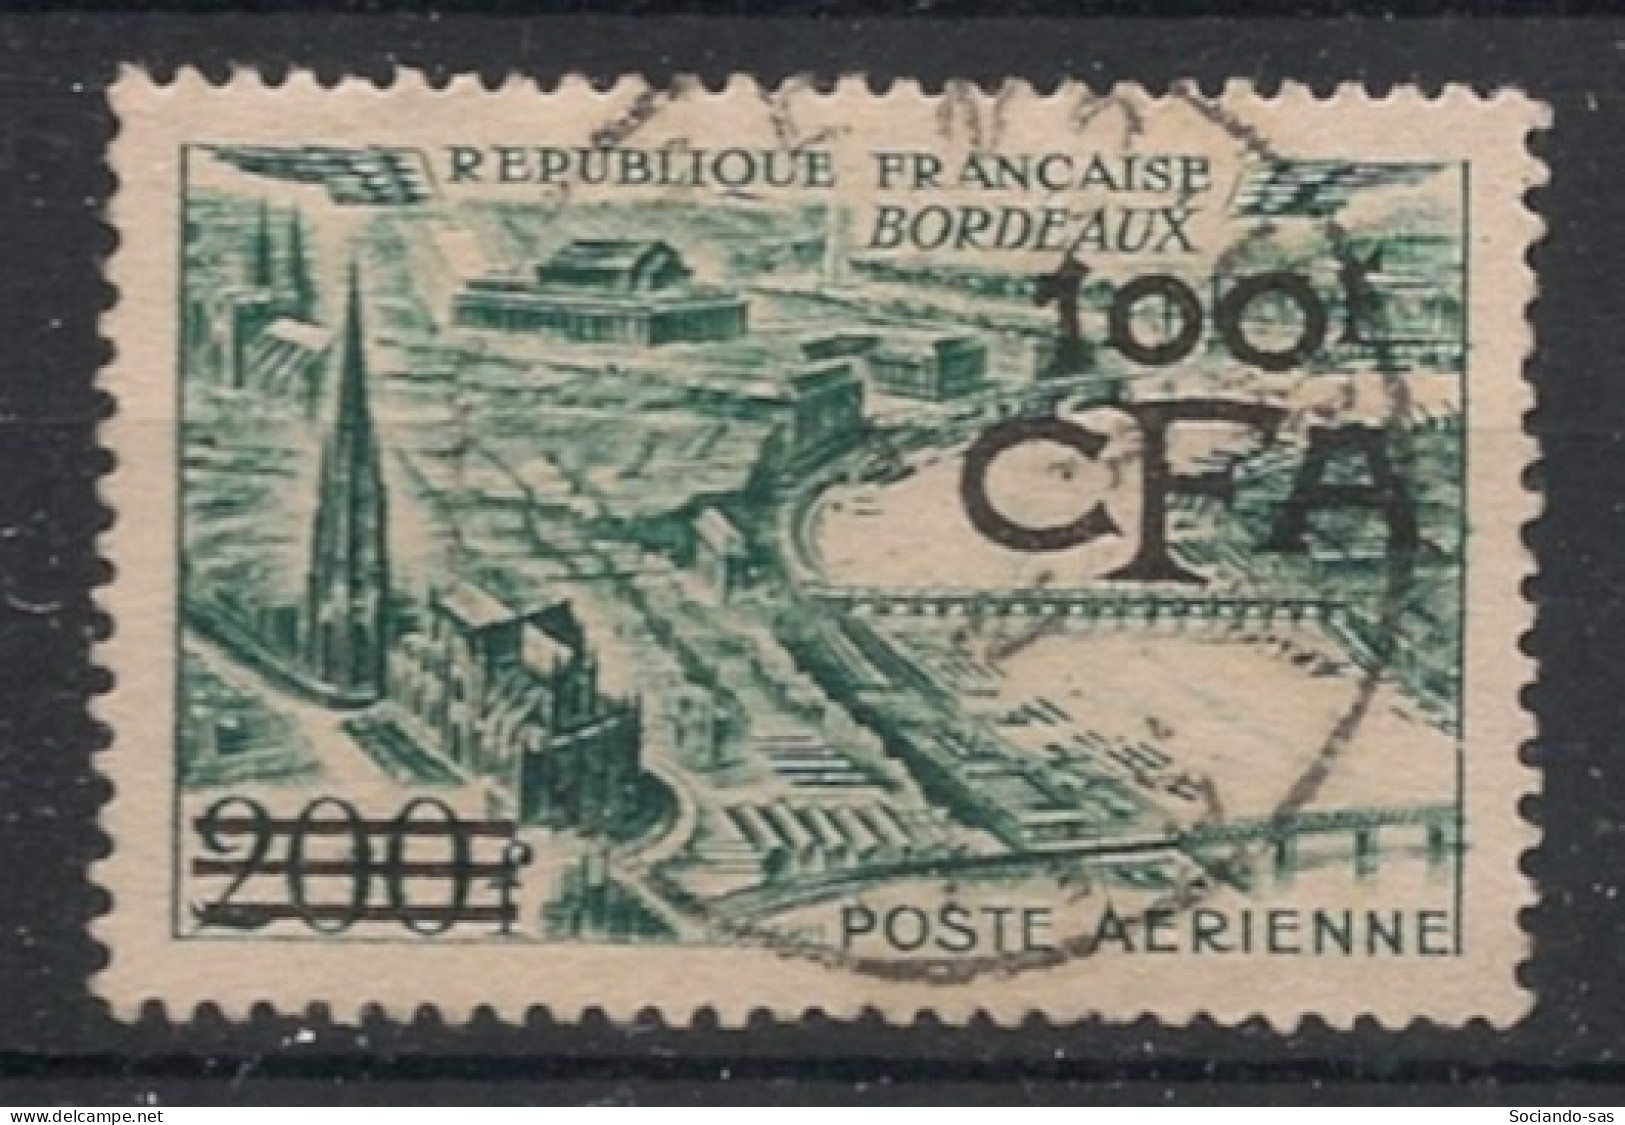 REUNION - 1951 - Poste Aérienne PA N°YT. 49 - Bordeaux 100f Sur 200f - Oblitéré / Used - Poste Aérienne